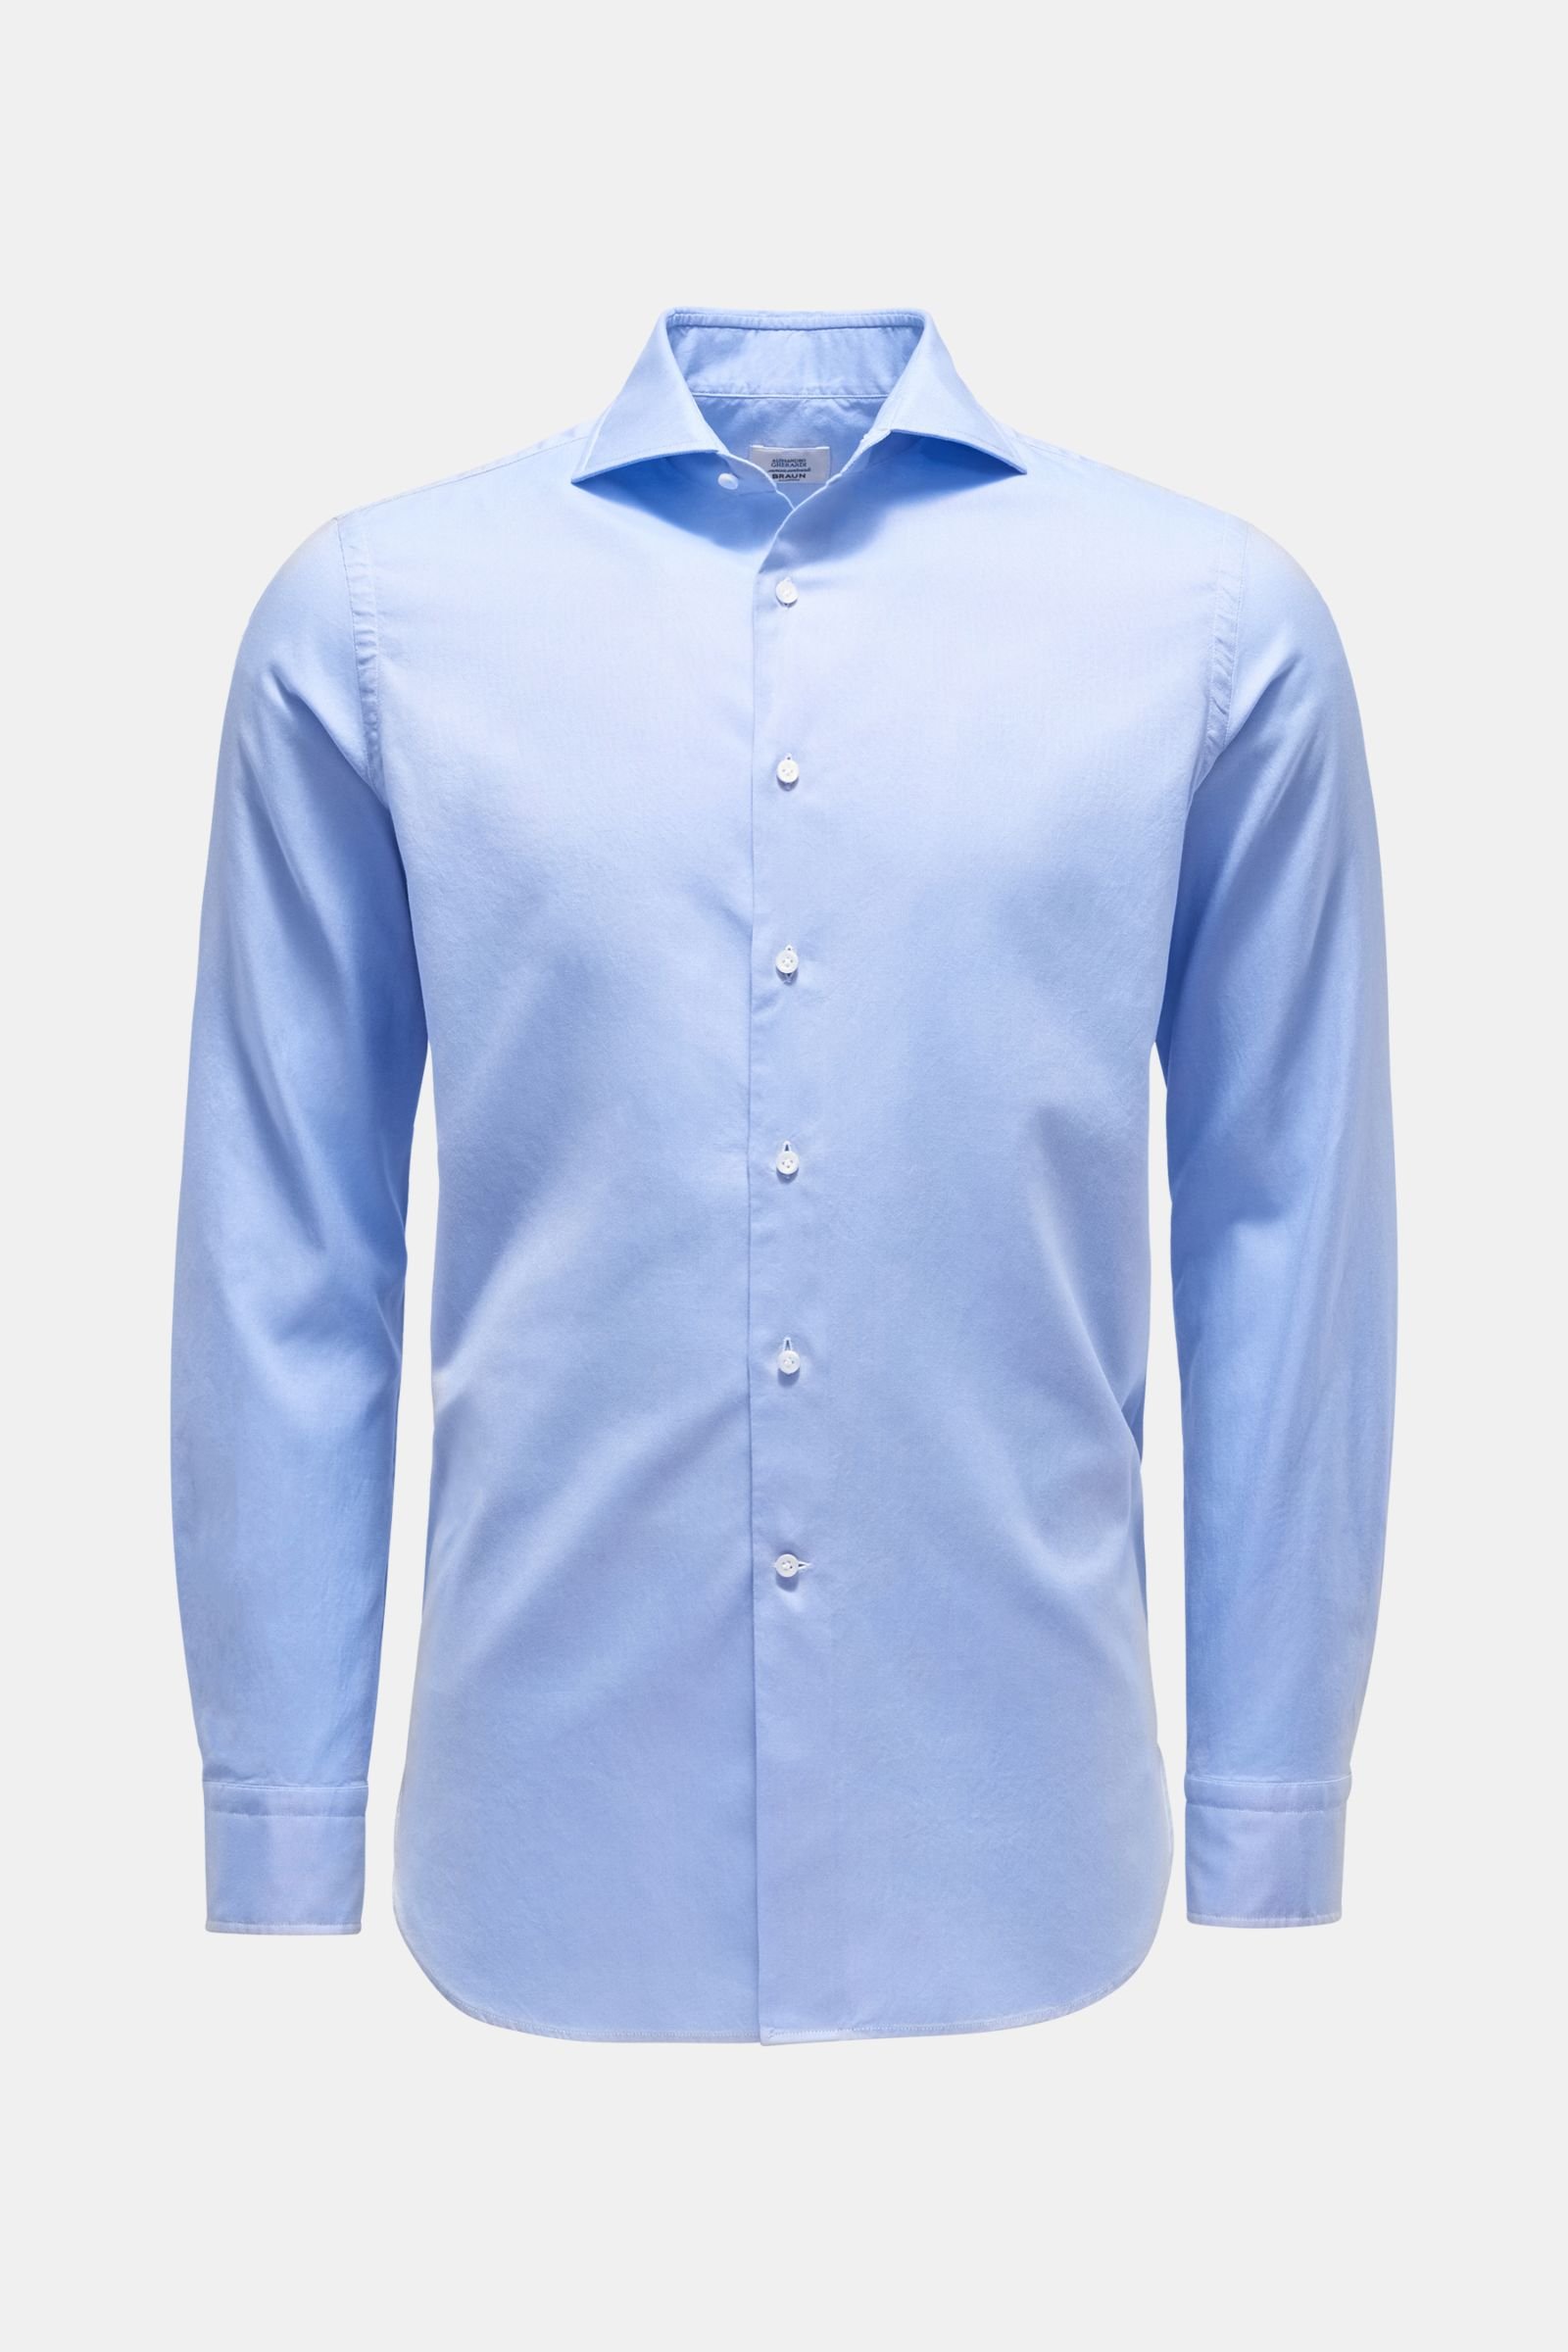 Oxford shirt shark collar light blue